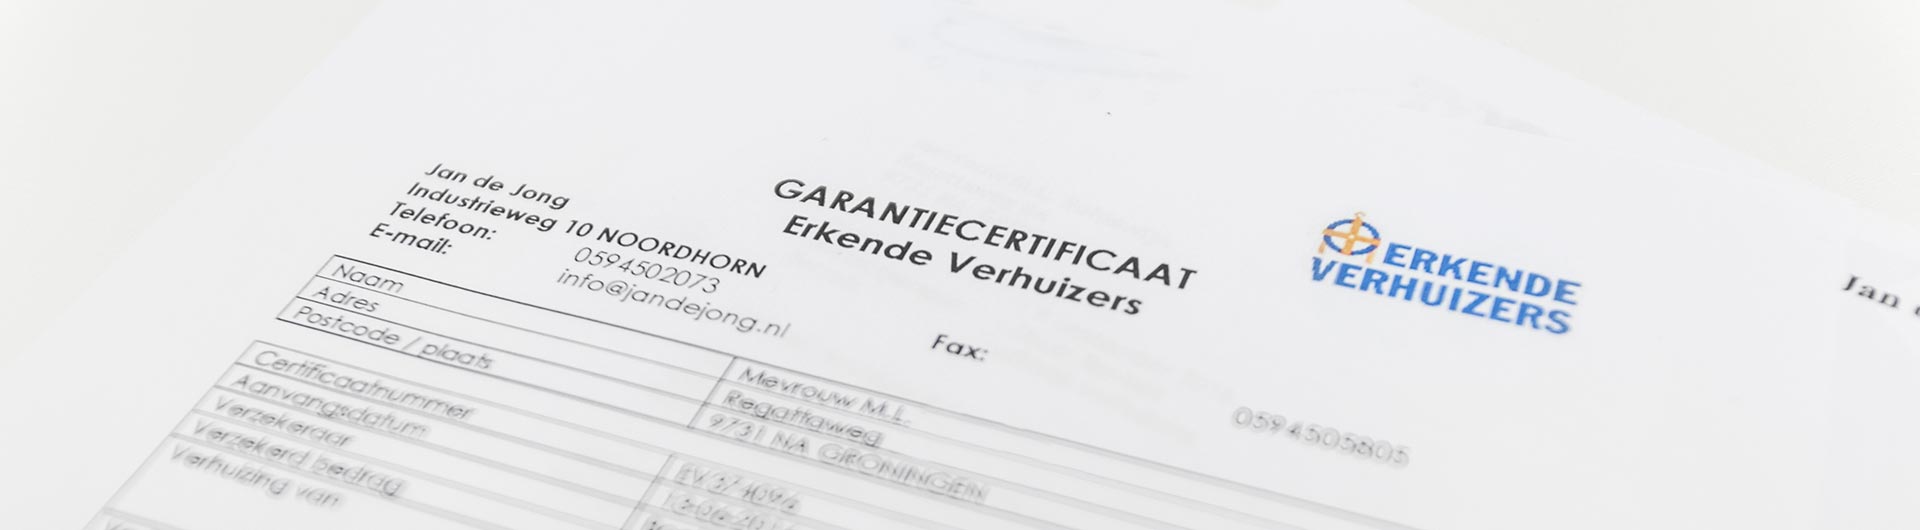 Garantiecertificaat Jan de Jong Verhuizingen